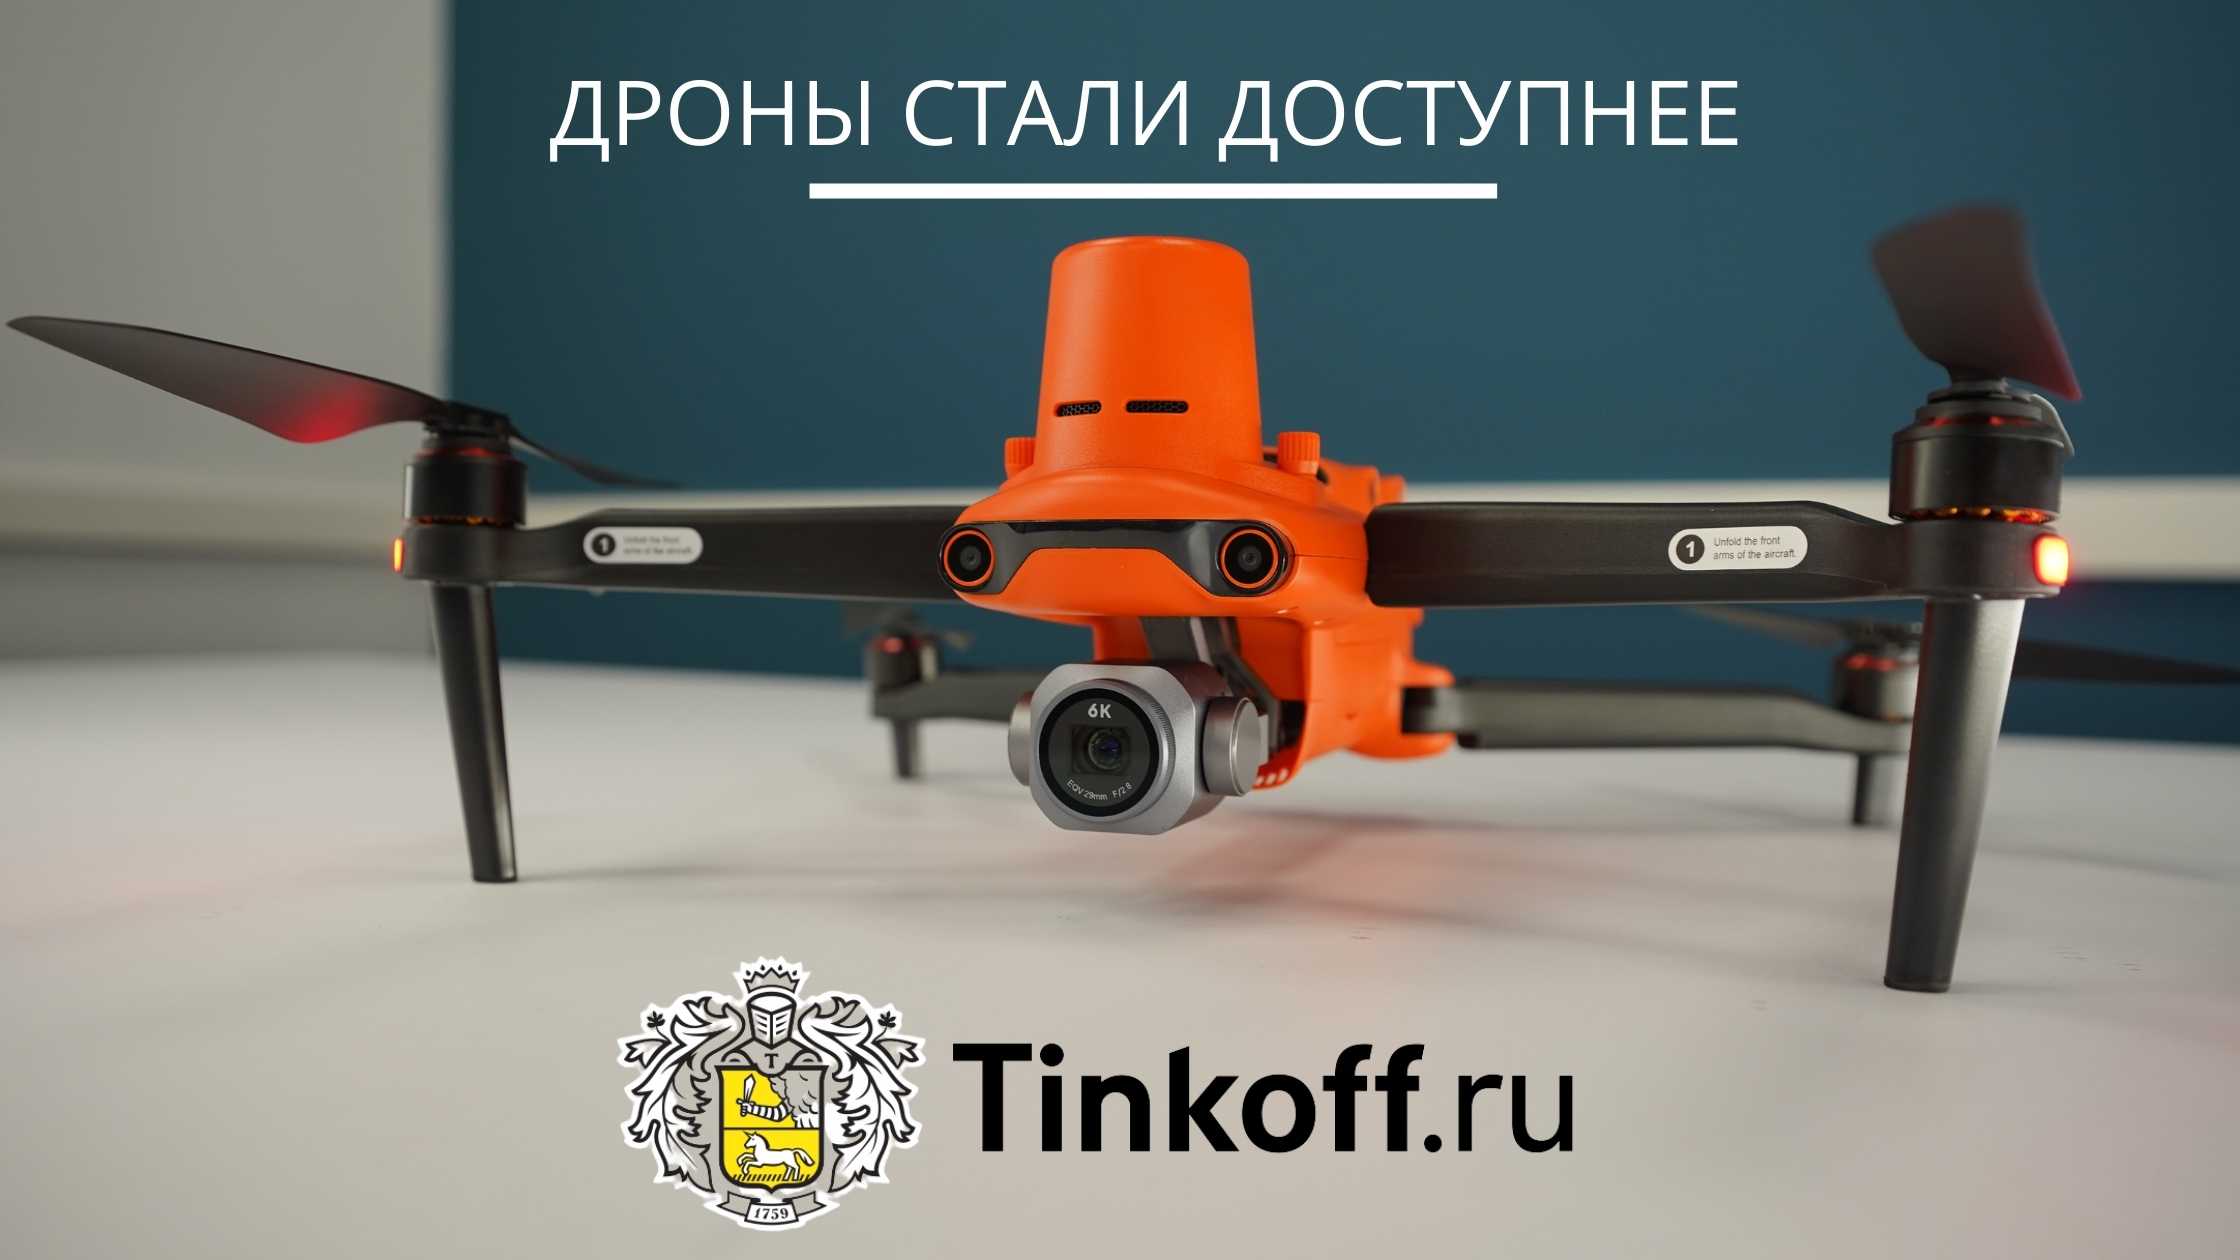 Кредиты от «Тинькофф» на покупку дронов - Новости